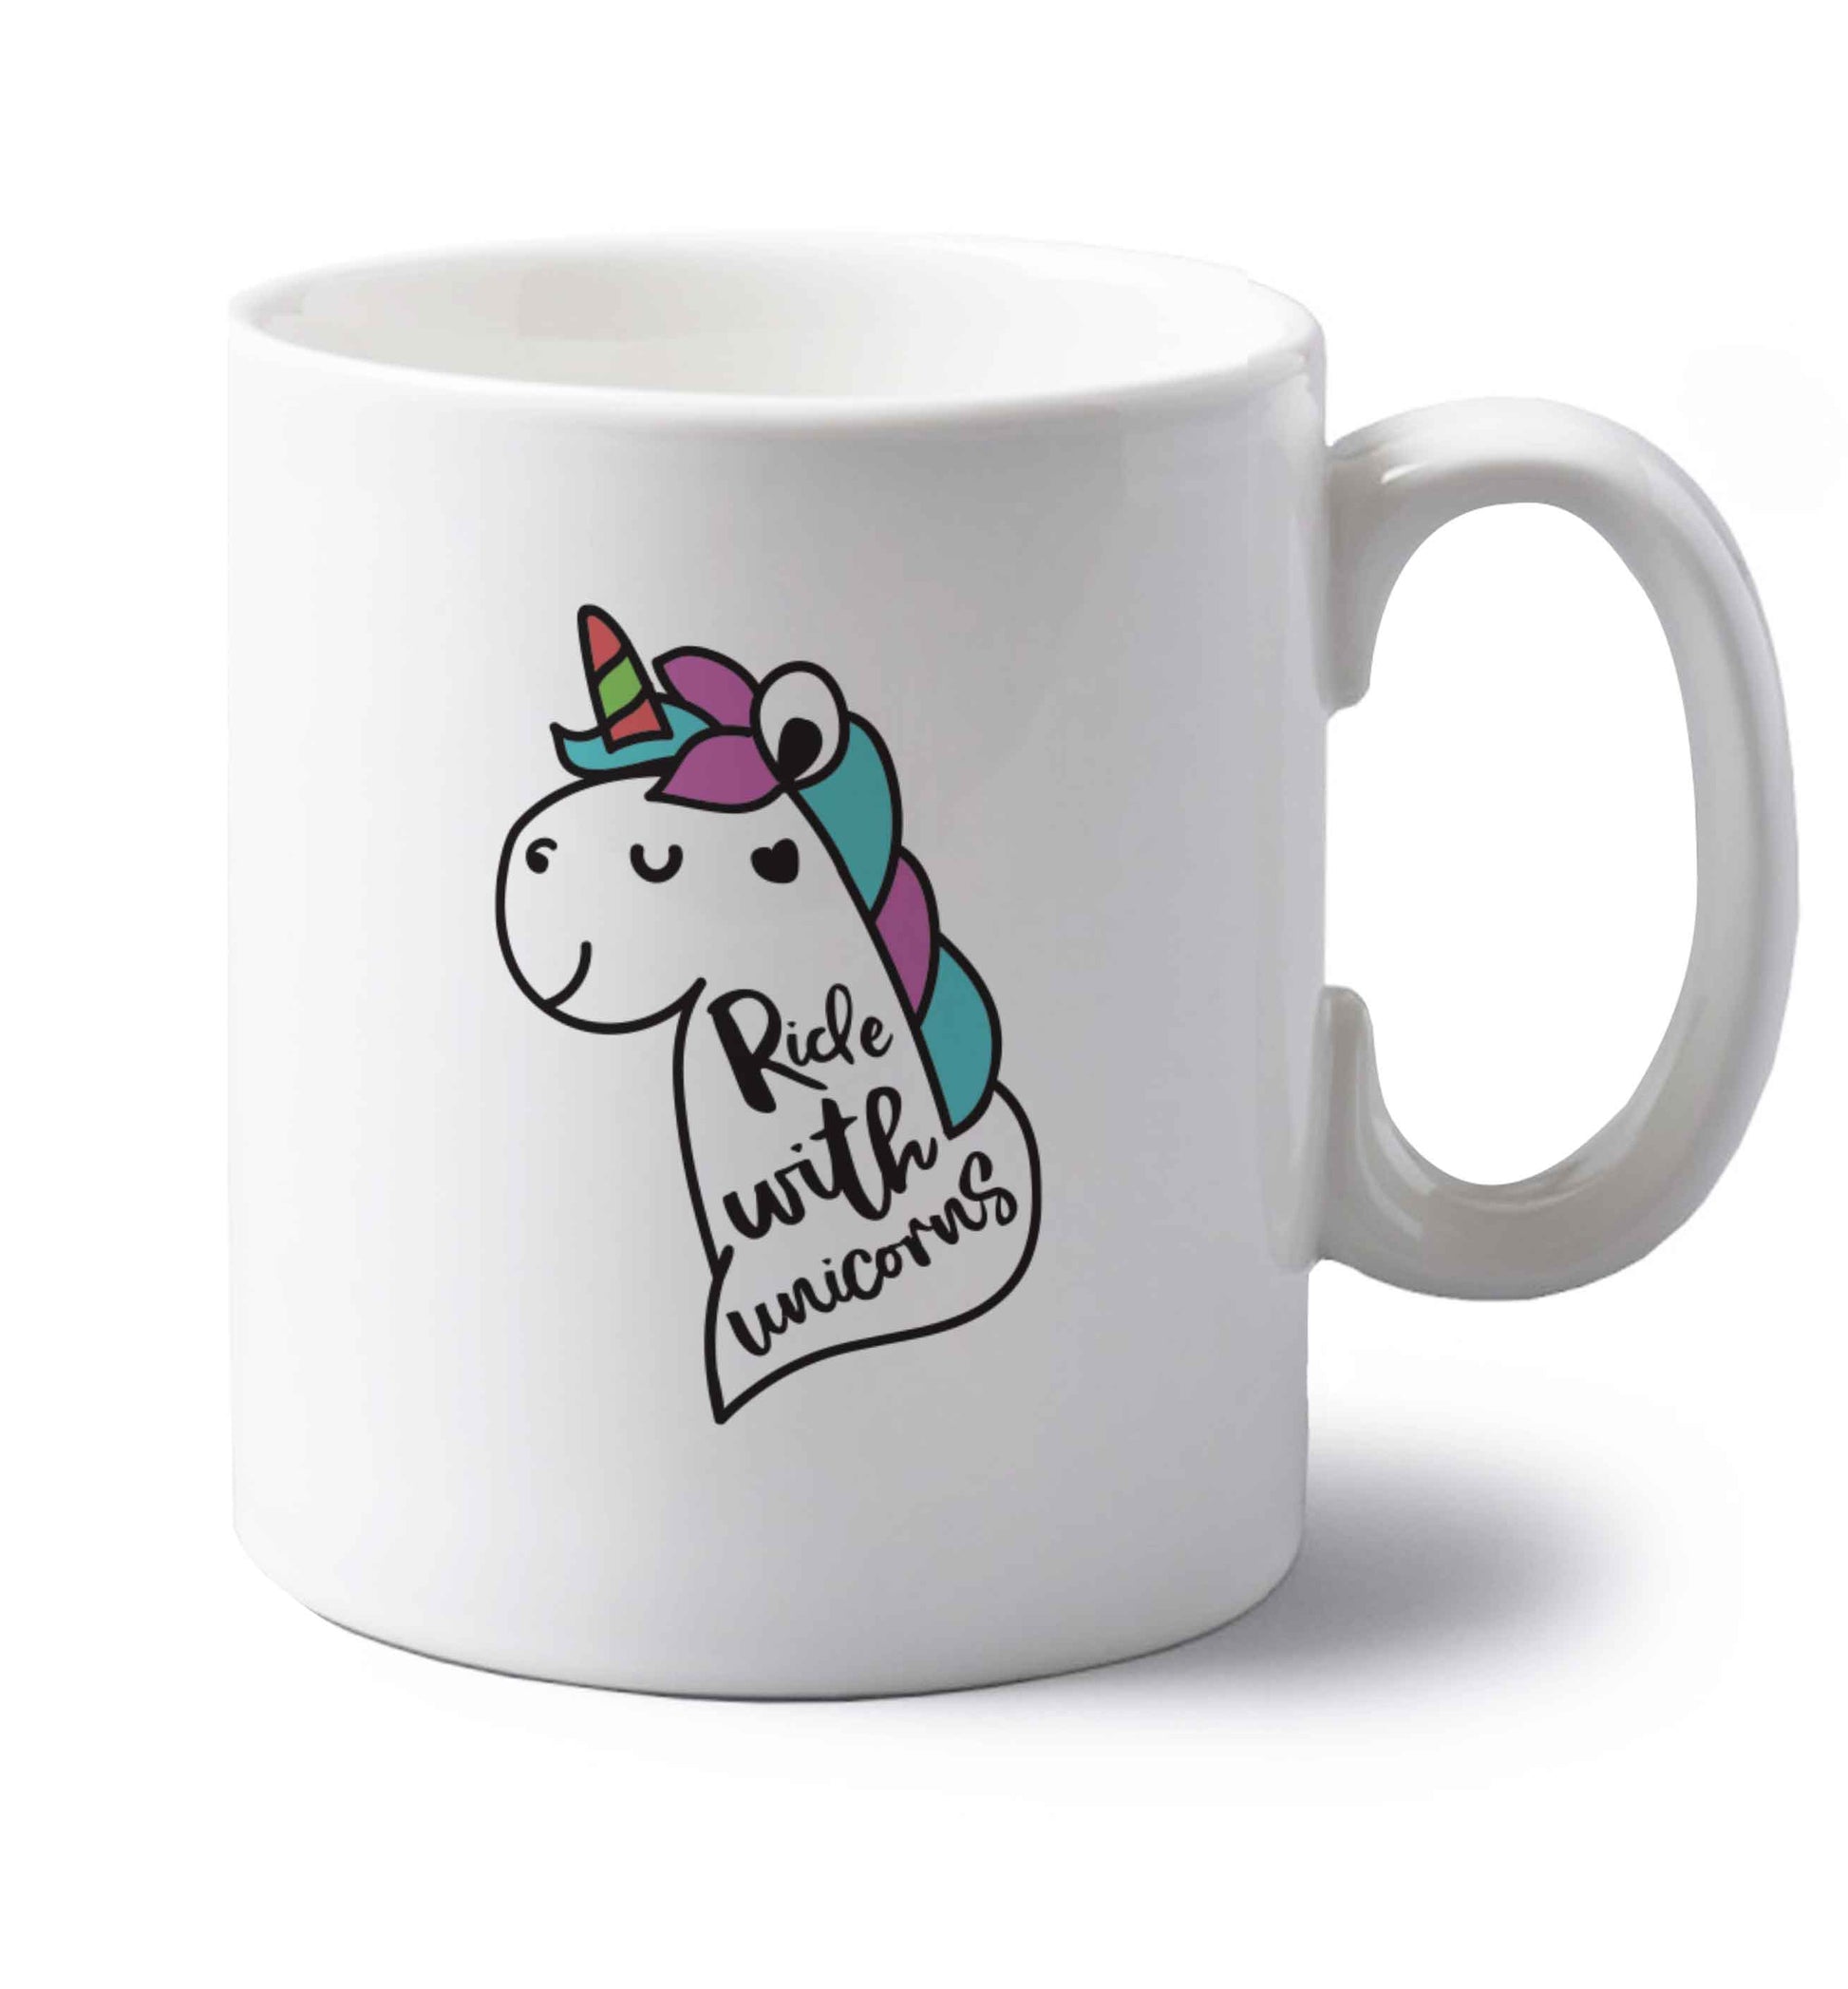 Ride with unicorns left handed white ceramic mug 